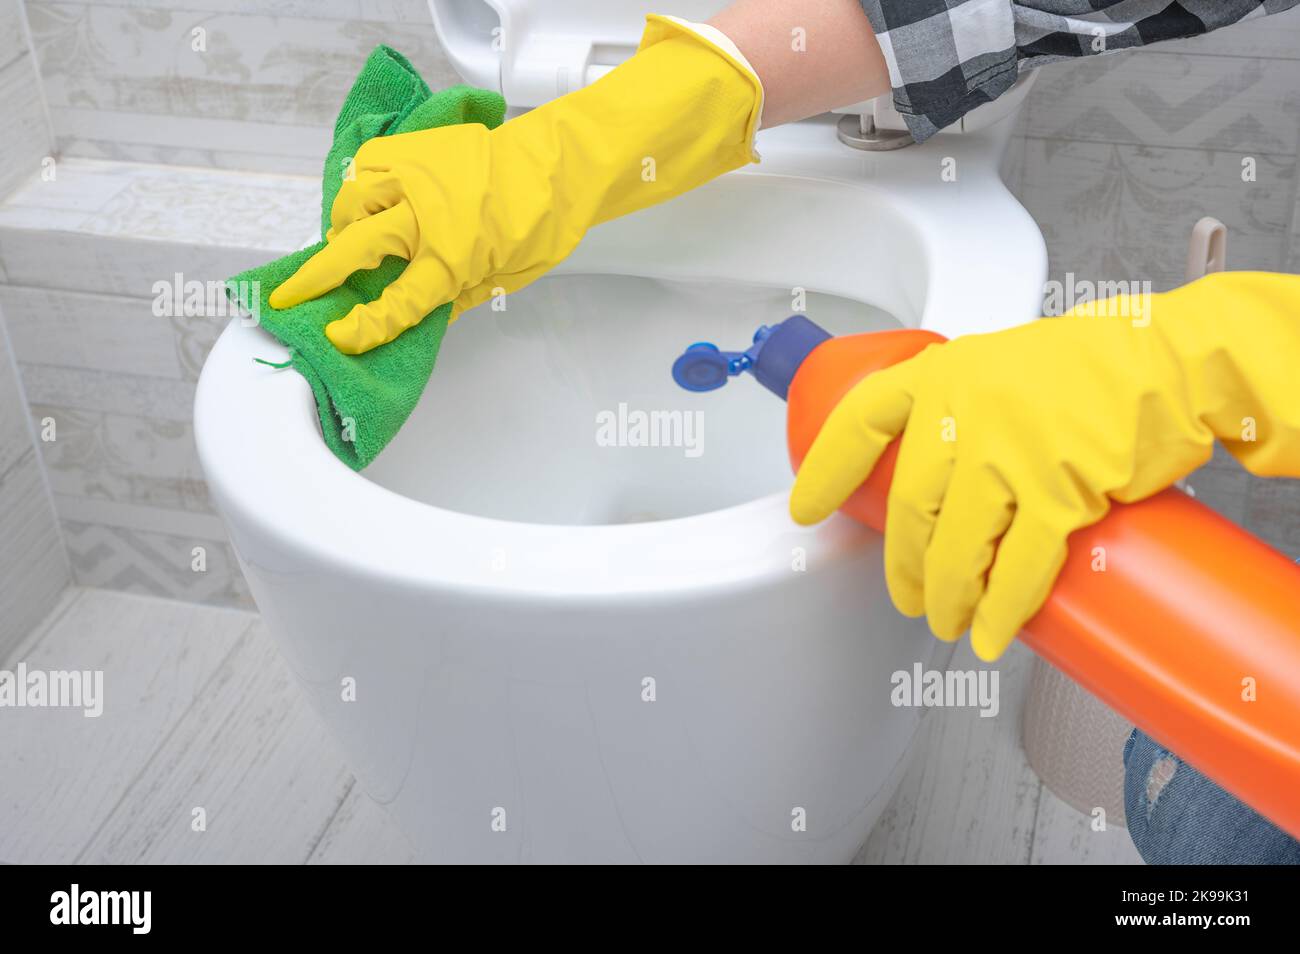 Nahaufnahme Hand mit Waschmittel Reinigung Toilettenschüssel im Badezimmer. Mann in gelben Gummihandschuhen, der Toilettensitz mit grünem Tuch reinigt. Badezimmer und Toilette Stockfoto